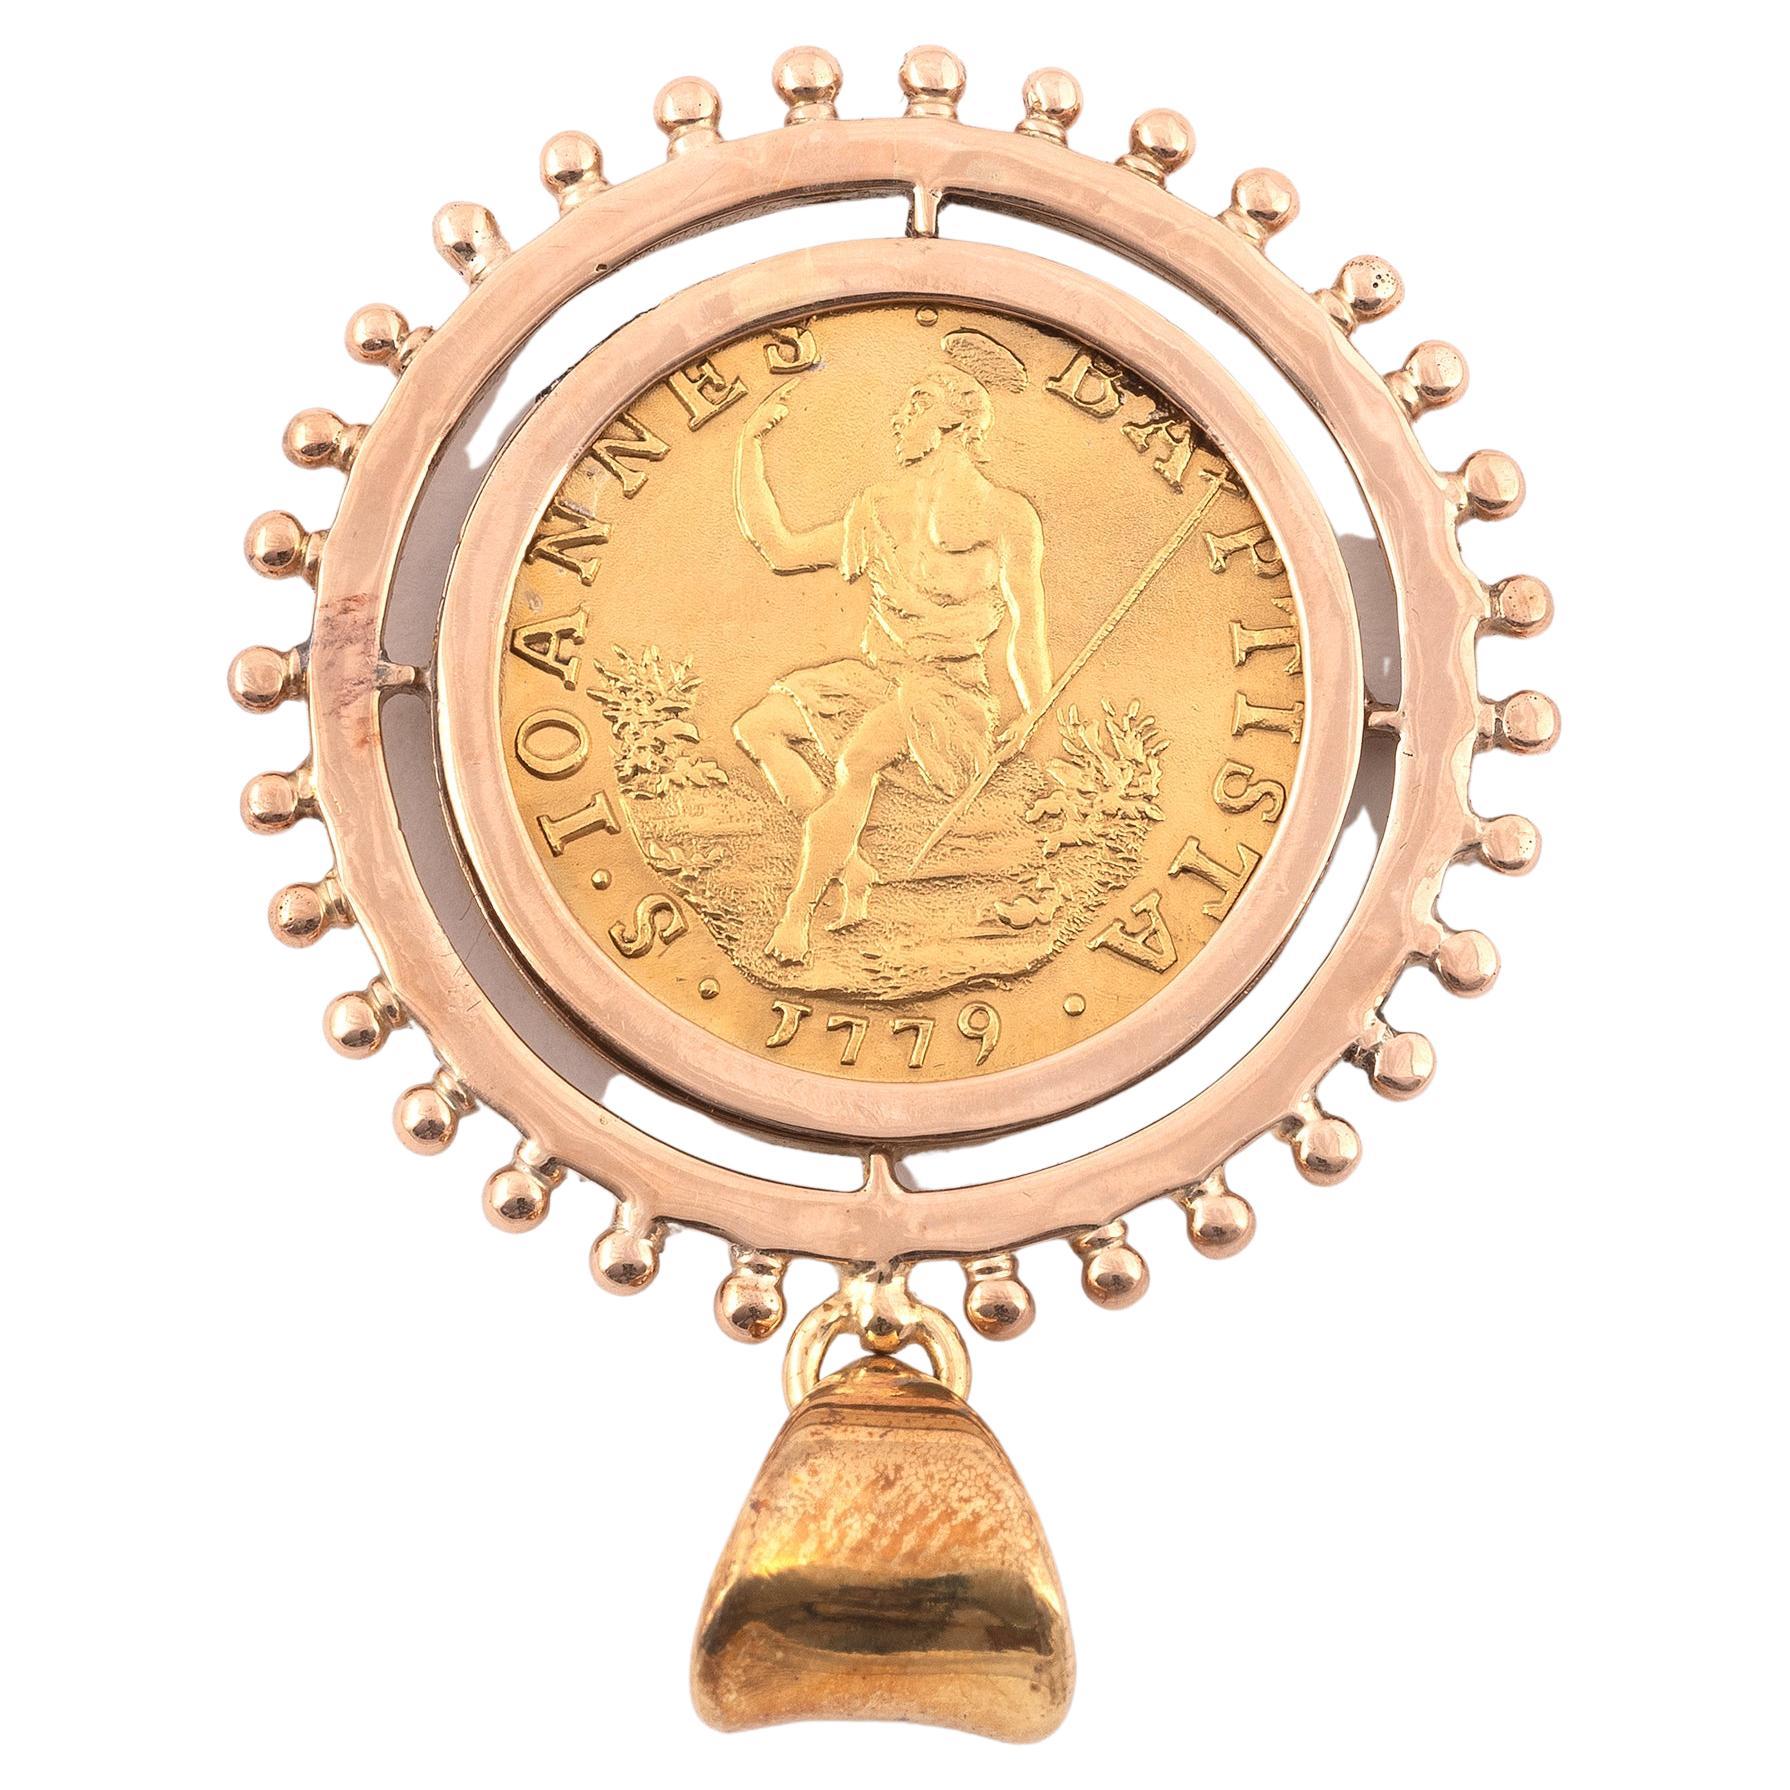 Pièce ancienne en or de Fiorino datée de 1779 avec le pendentif en or de la monture.
Diamètre : 3,2cm
Poids : 8.52gr.